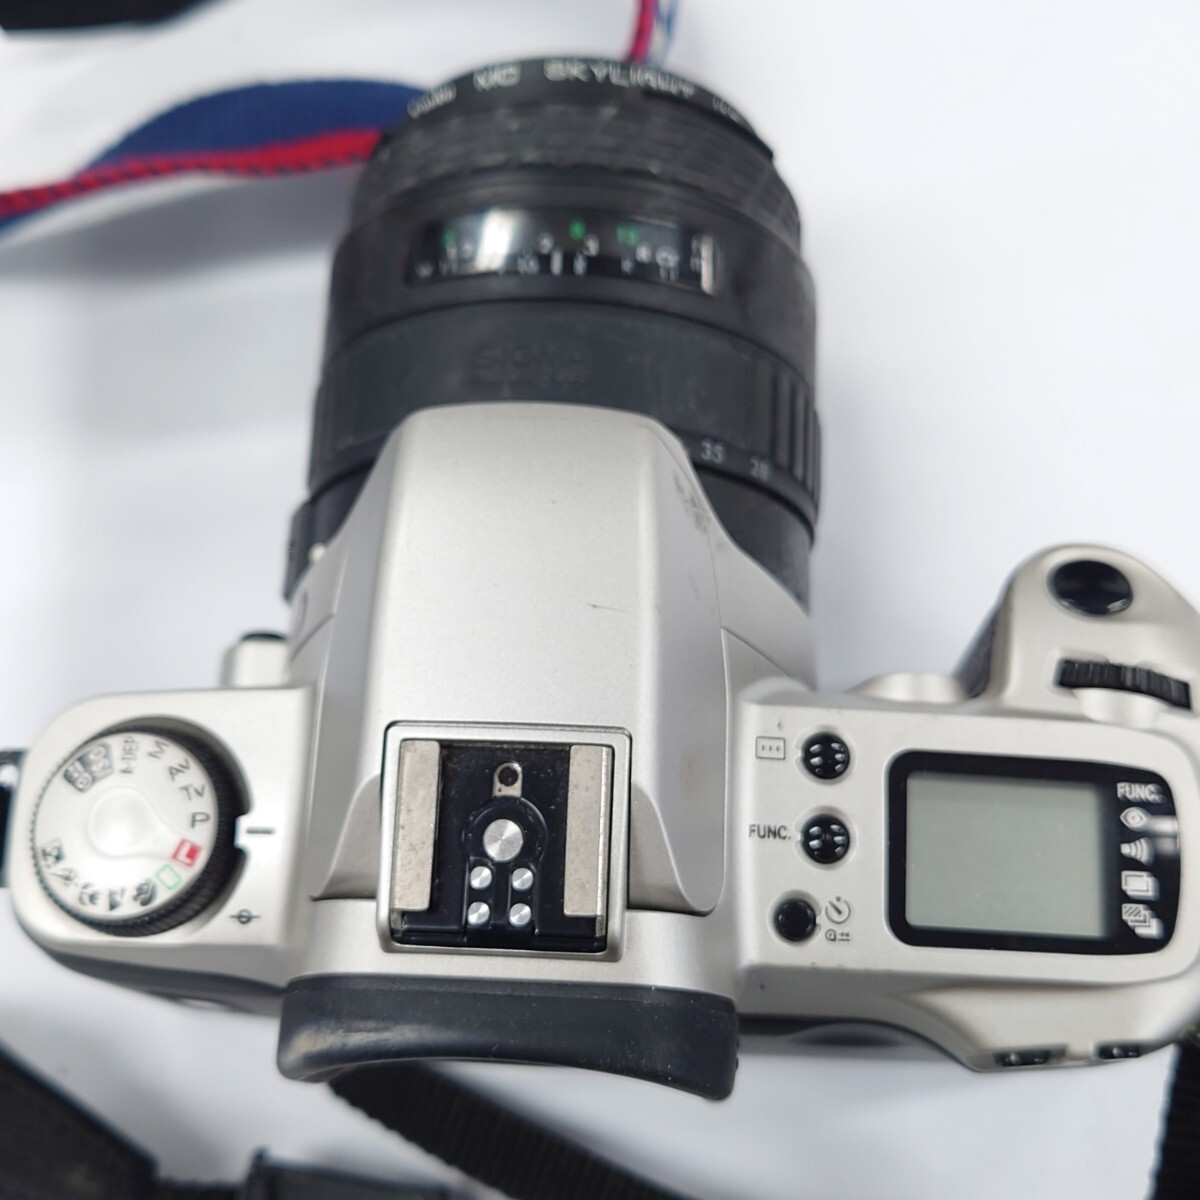 I934 カメラ Canon EOS kiss キヤノン SIGMA UC ZOOM 28-70mm 1:3.5-4.5 フィルムカメラ 中古 ジャンク品 訳あり _画像2